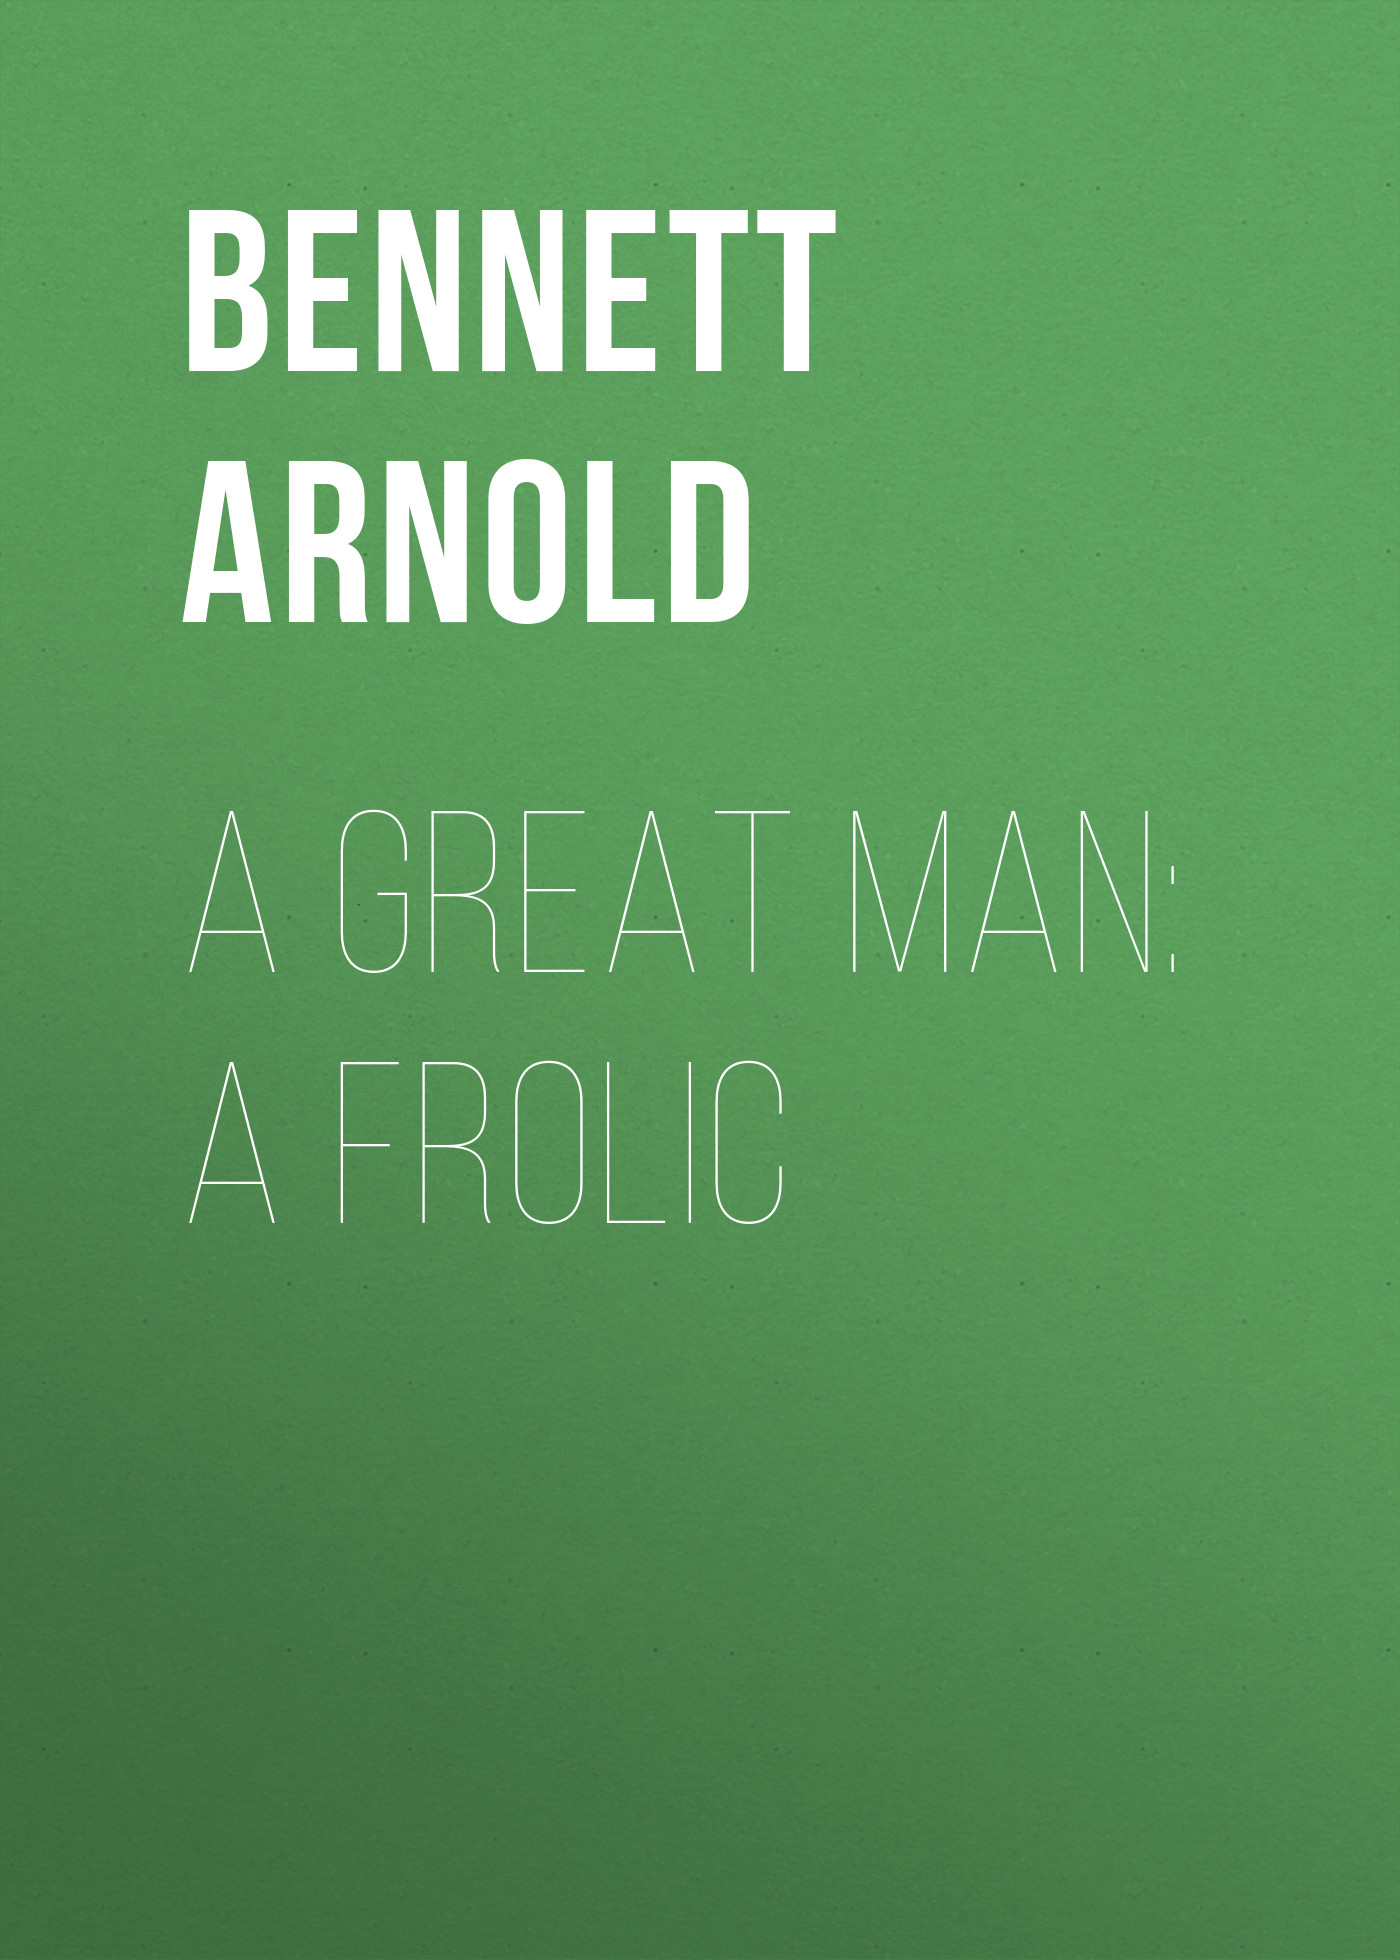 Книга A Great Man: A Frolic из серии , созданная Arnold Bennett, может относится к жанру Иностранные языки, Зарубежная старинная литература, Зарубежная классика. Стоимость электронной книги A Great Man: A Frolic с идентификатором 24171468 составляет 0.90 руб.